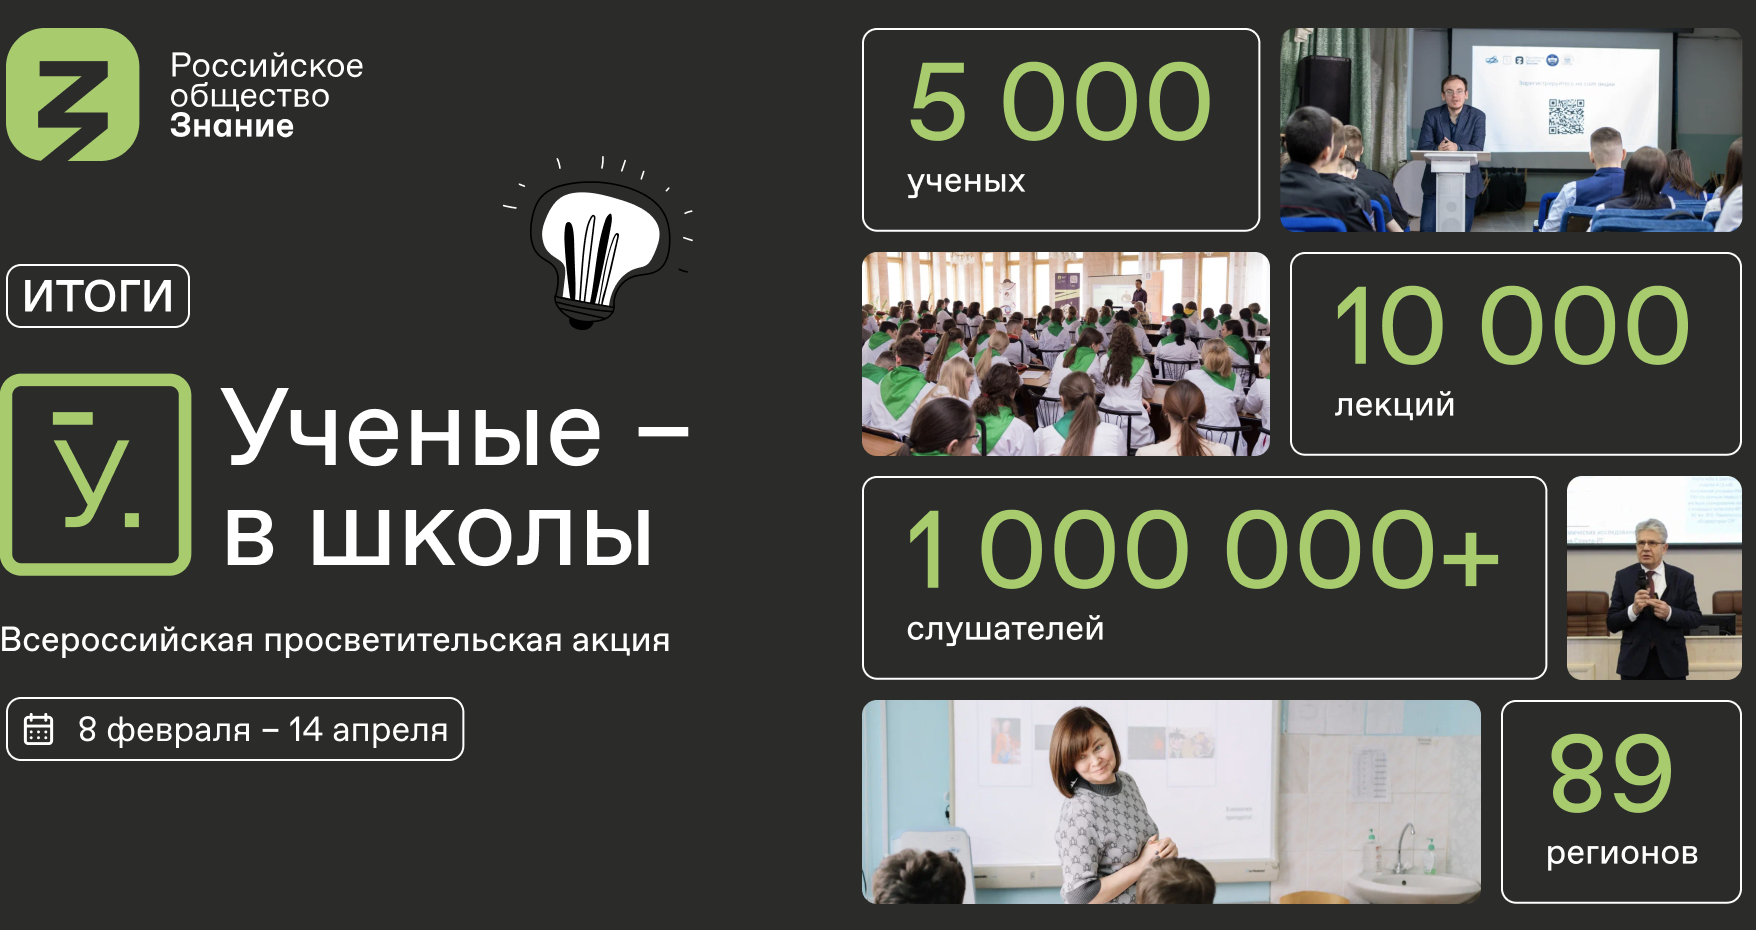 Более миллиона российских школьников приняли участие во Всероссийской просветительской акции «Ученые — в школы» Общества «Знание»